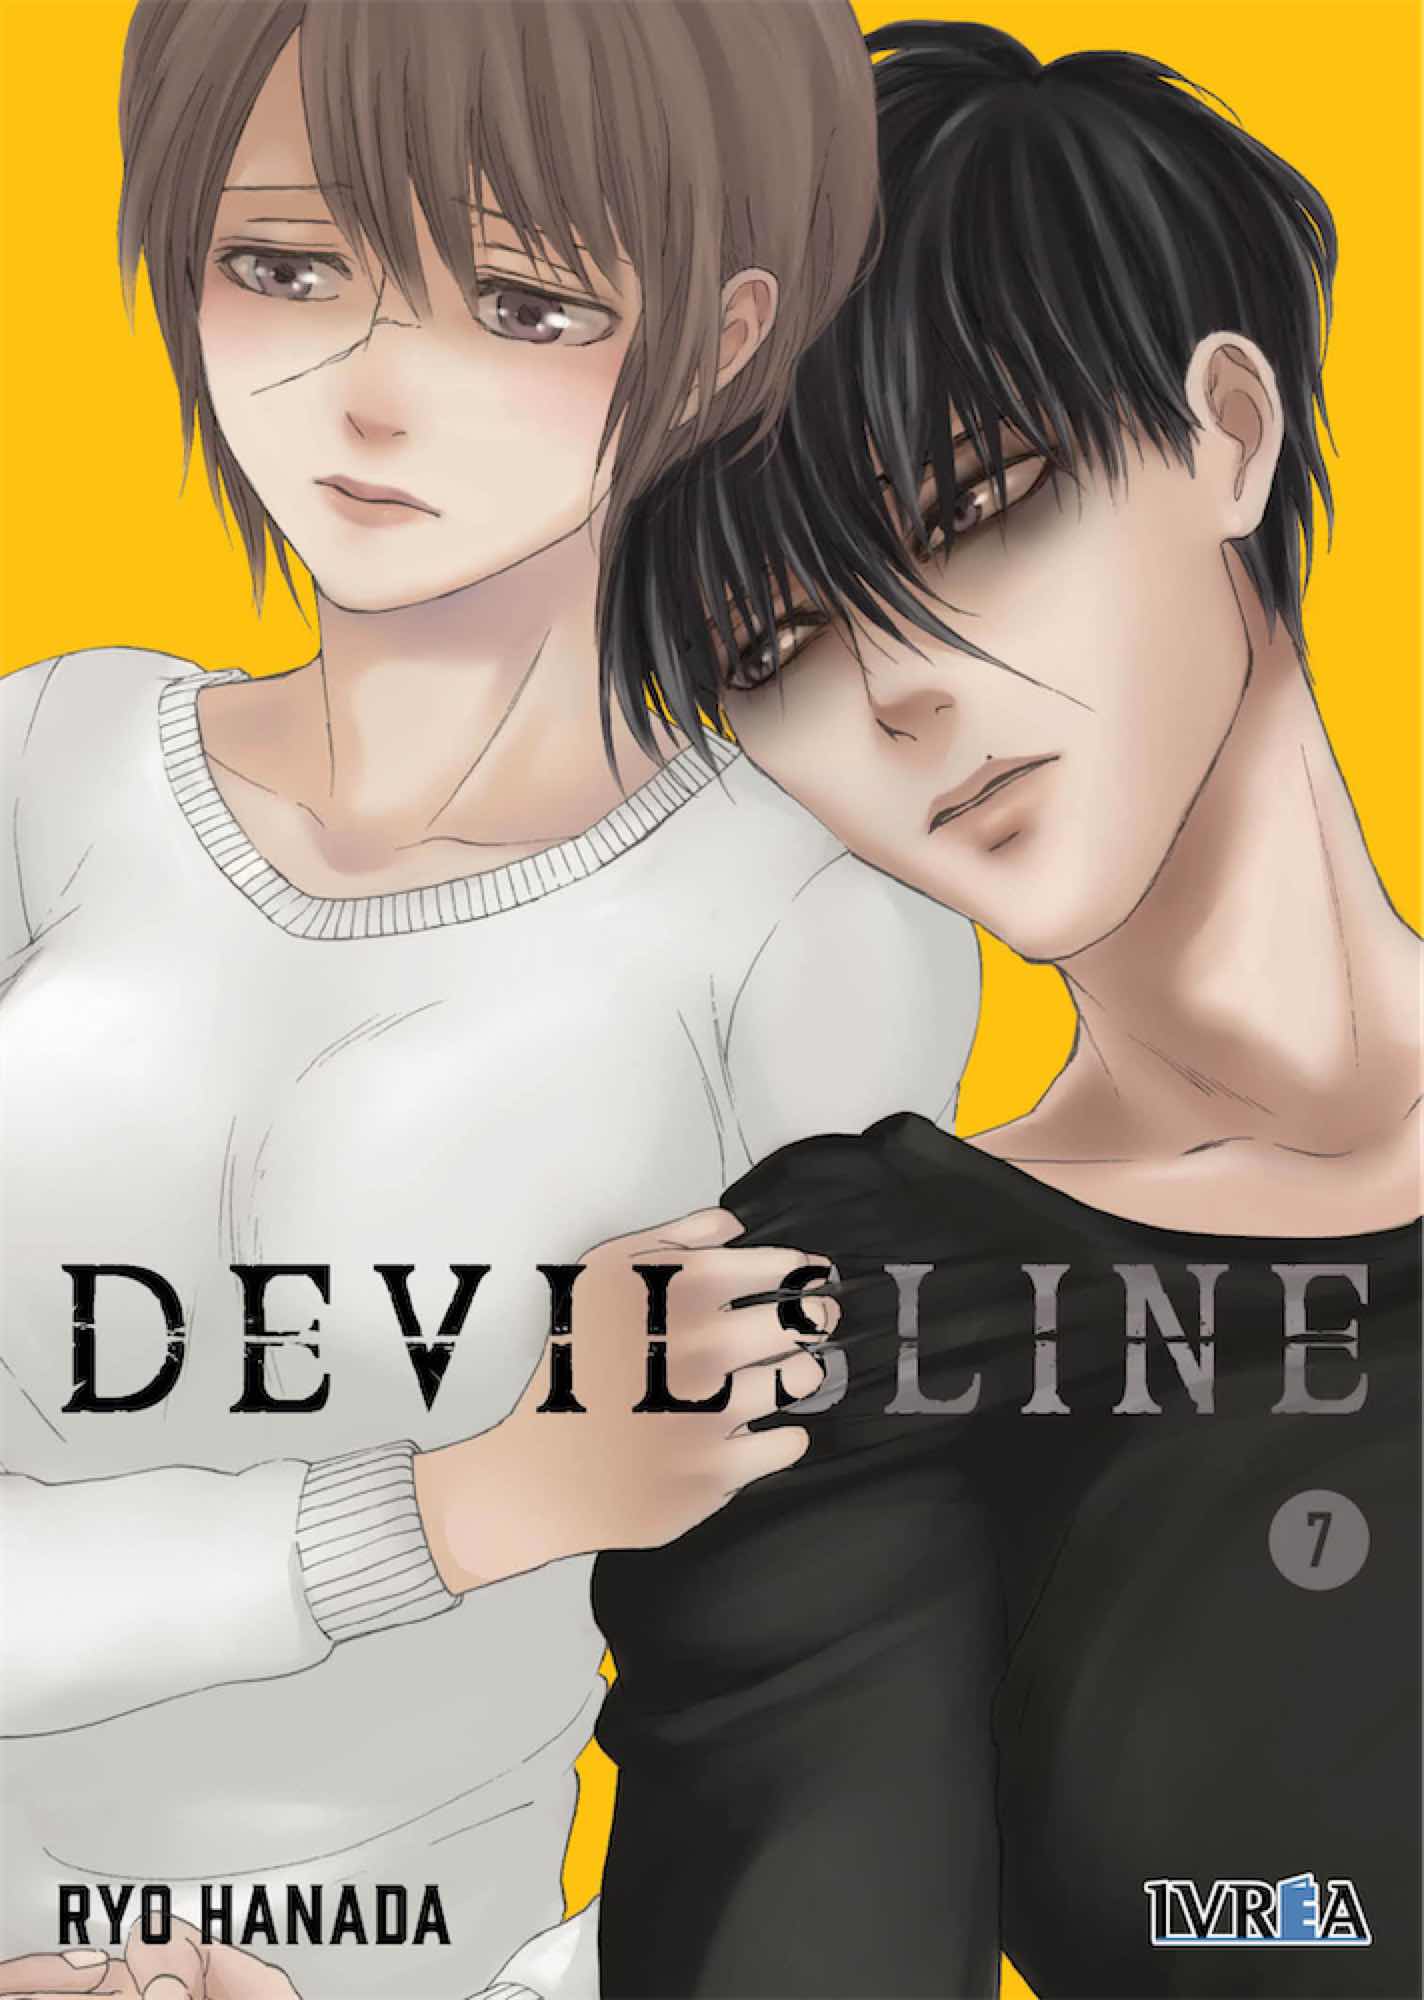 DEVILS LINE 07